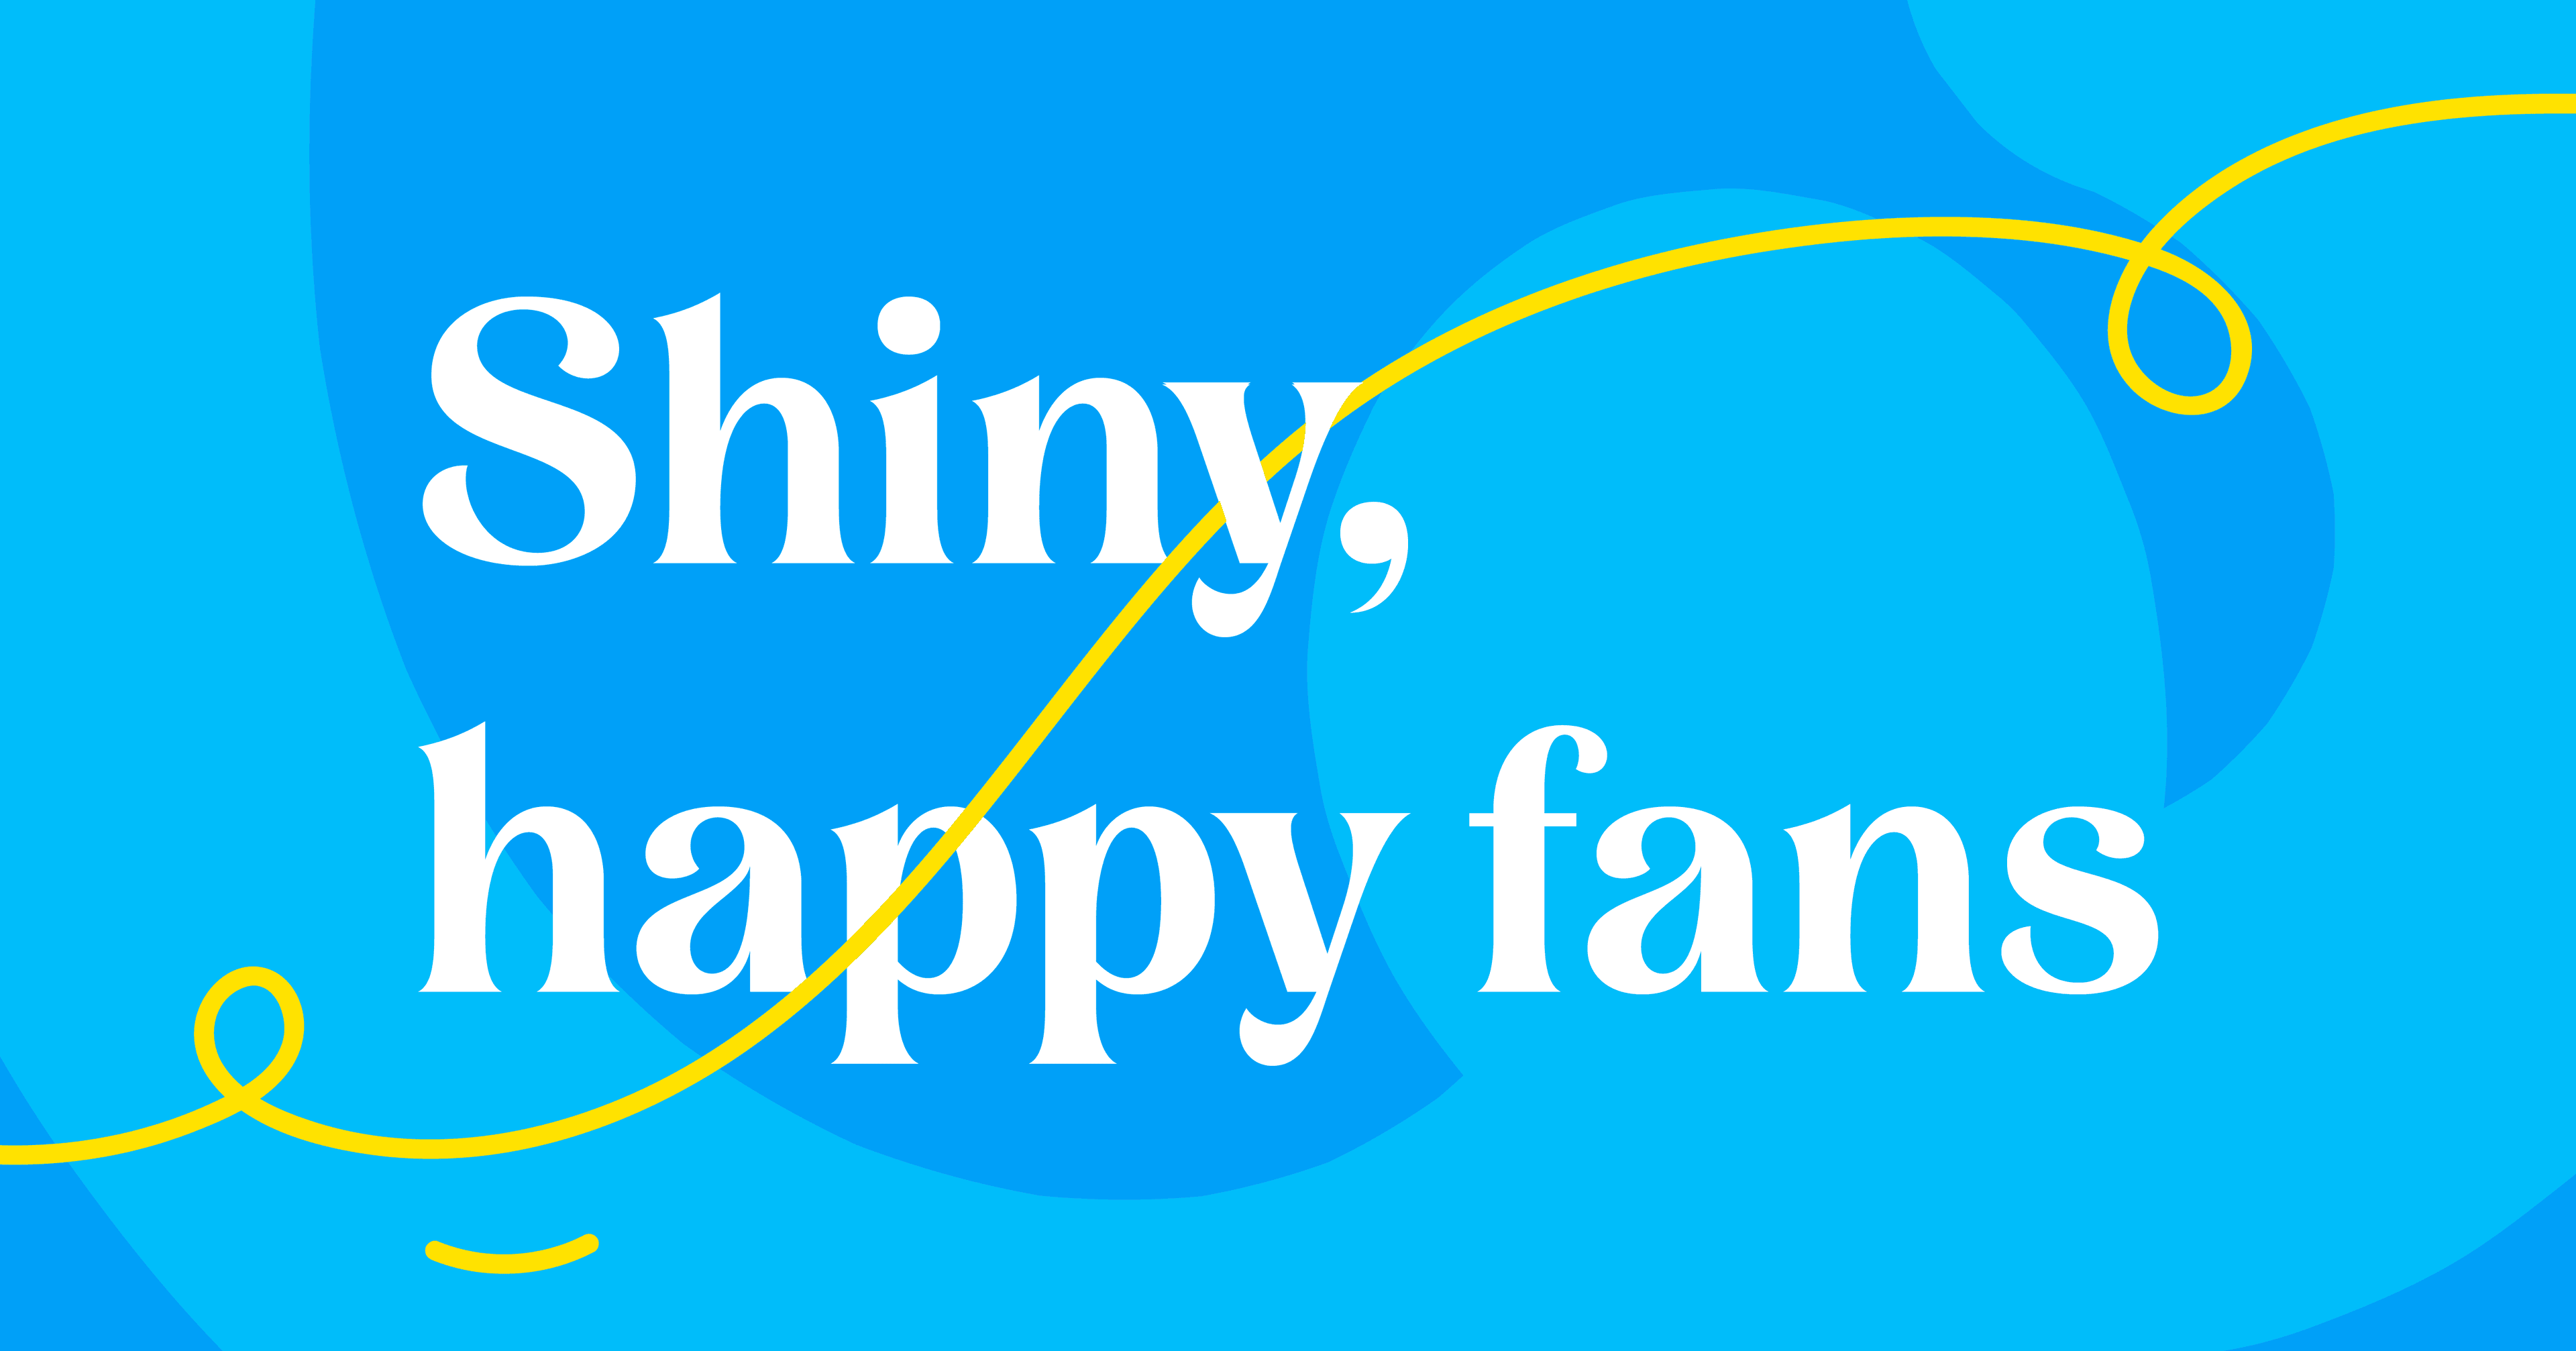 Shiny happy fans